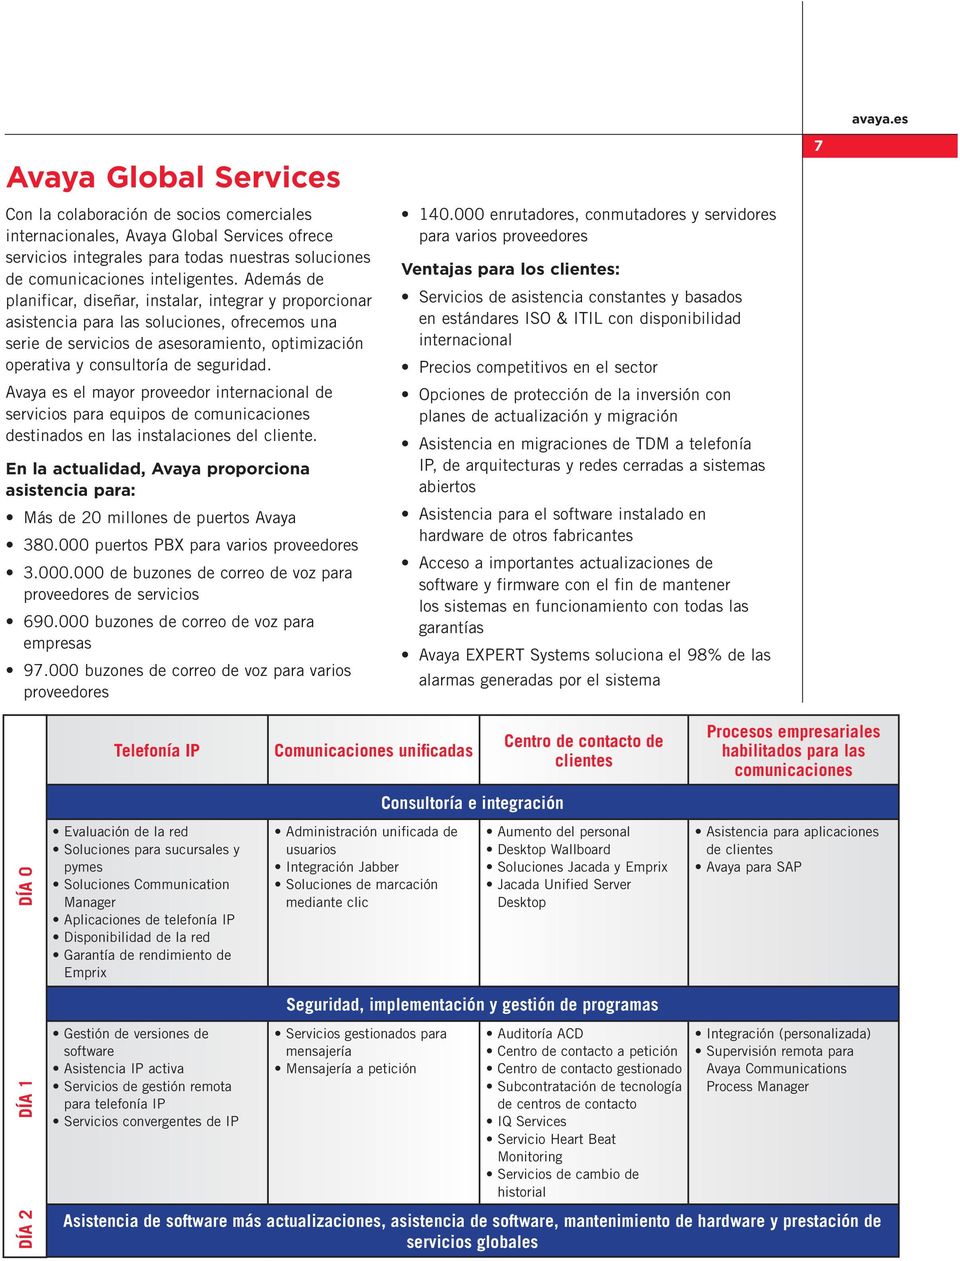 Avaya es el mayor proveedor internacional de servicios para equipos de comunicaciones destinados en las instalaciones del cliente.